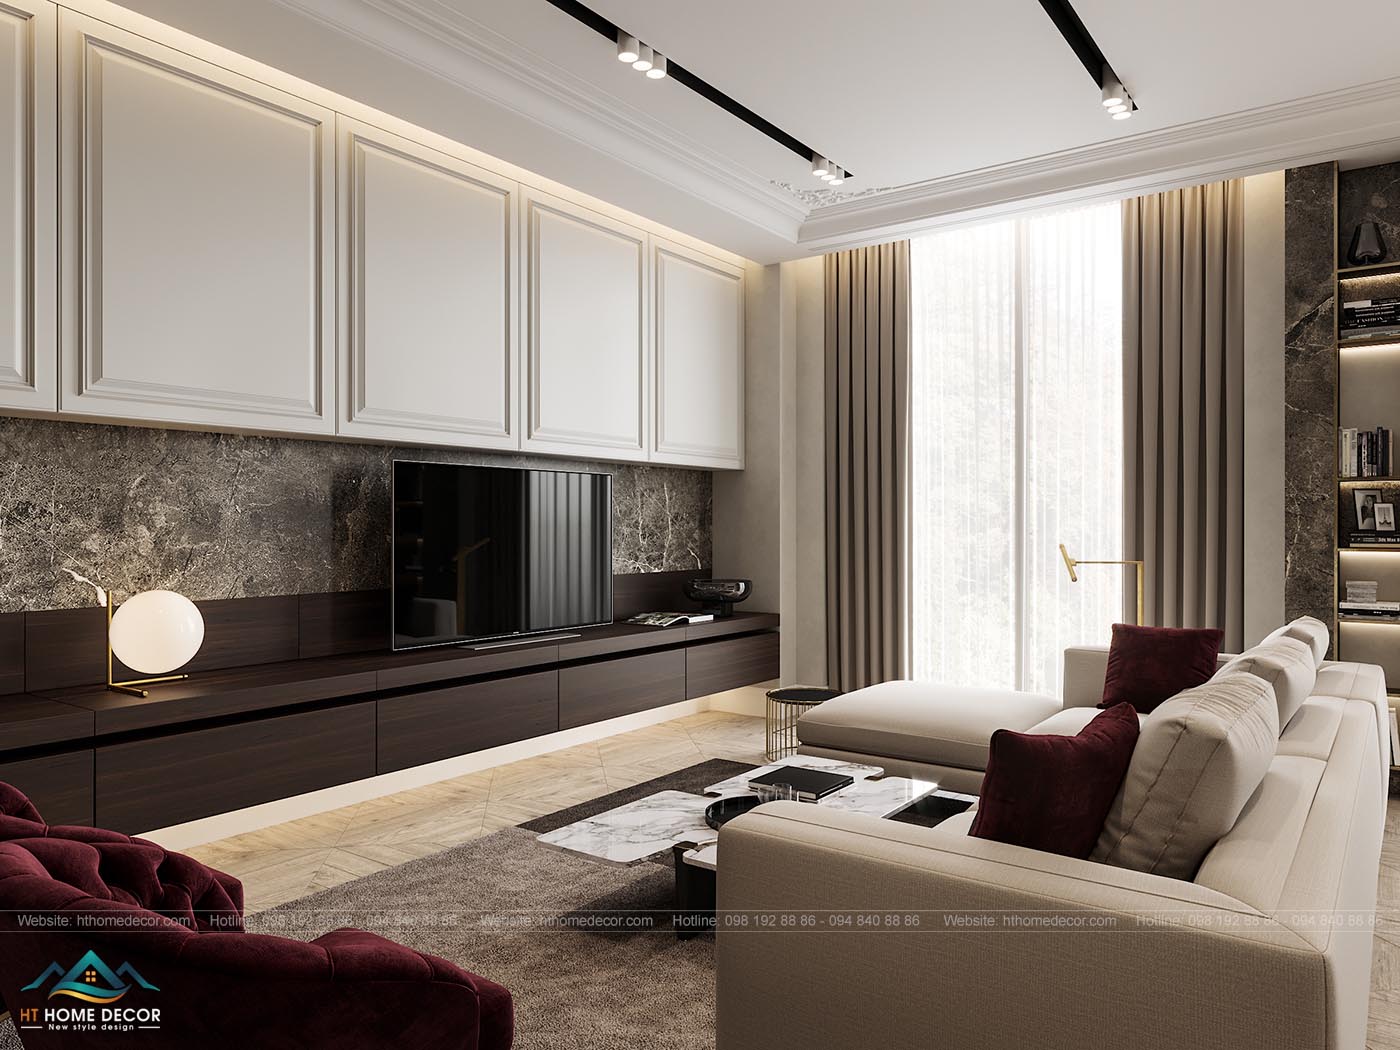 Ánh sáng tự nhiên, kết hợp với hệ thống đèn trần ánh vàng, đem lại không gian ấm áp cho toàn bộ thiết kế nội thất chung cư